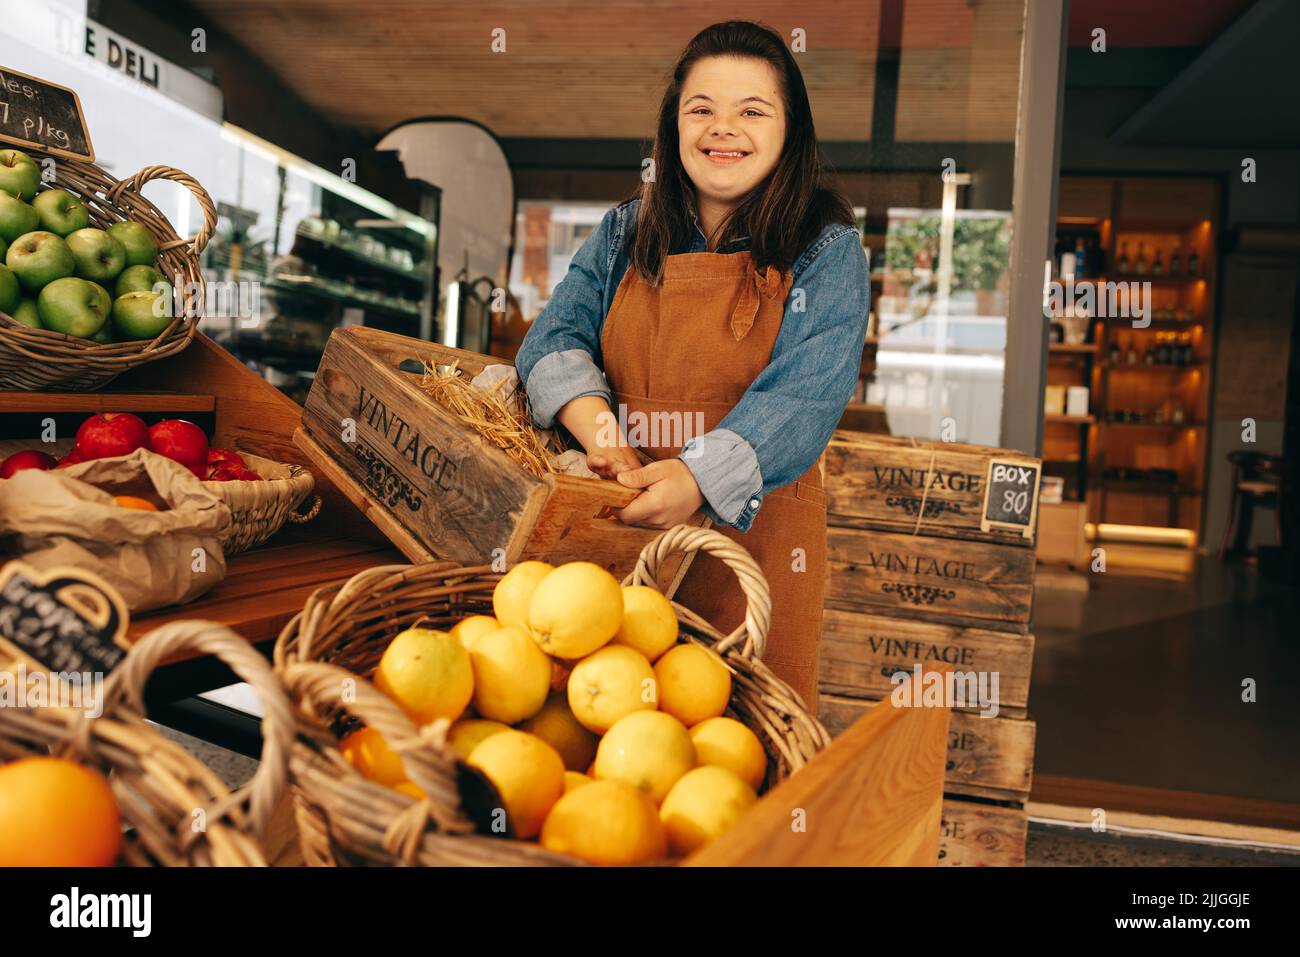 Glückliche Frau mit Down-Syndrom lächelt, während sie im Gemüsebereich eines Lebensmittelladens steht. Ermächtigte Frau mit einer intellektuellen Behinderung Stockfoto